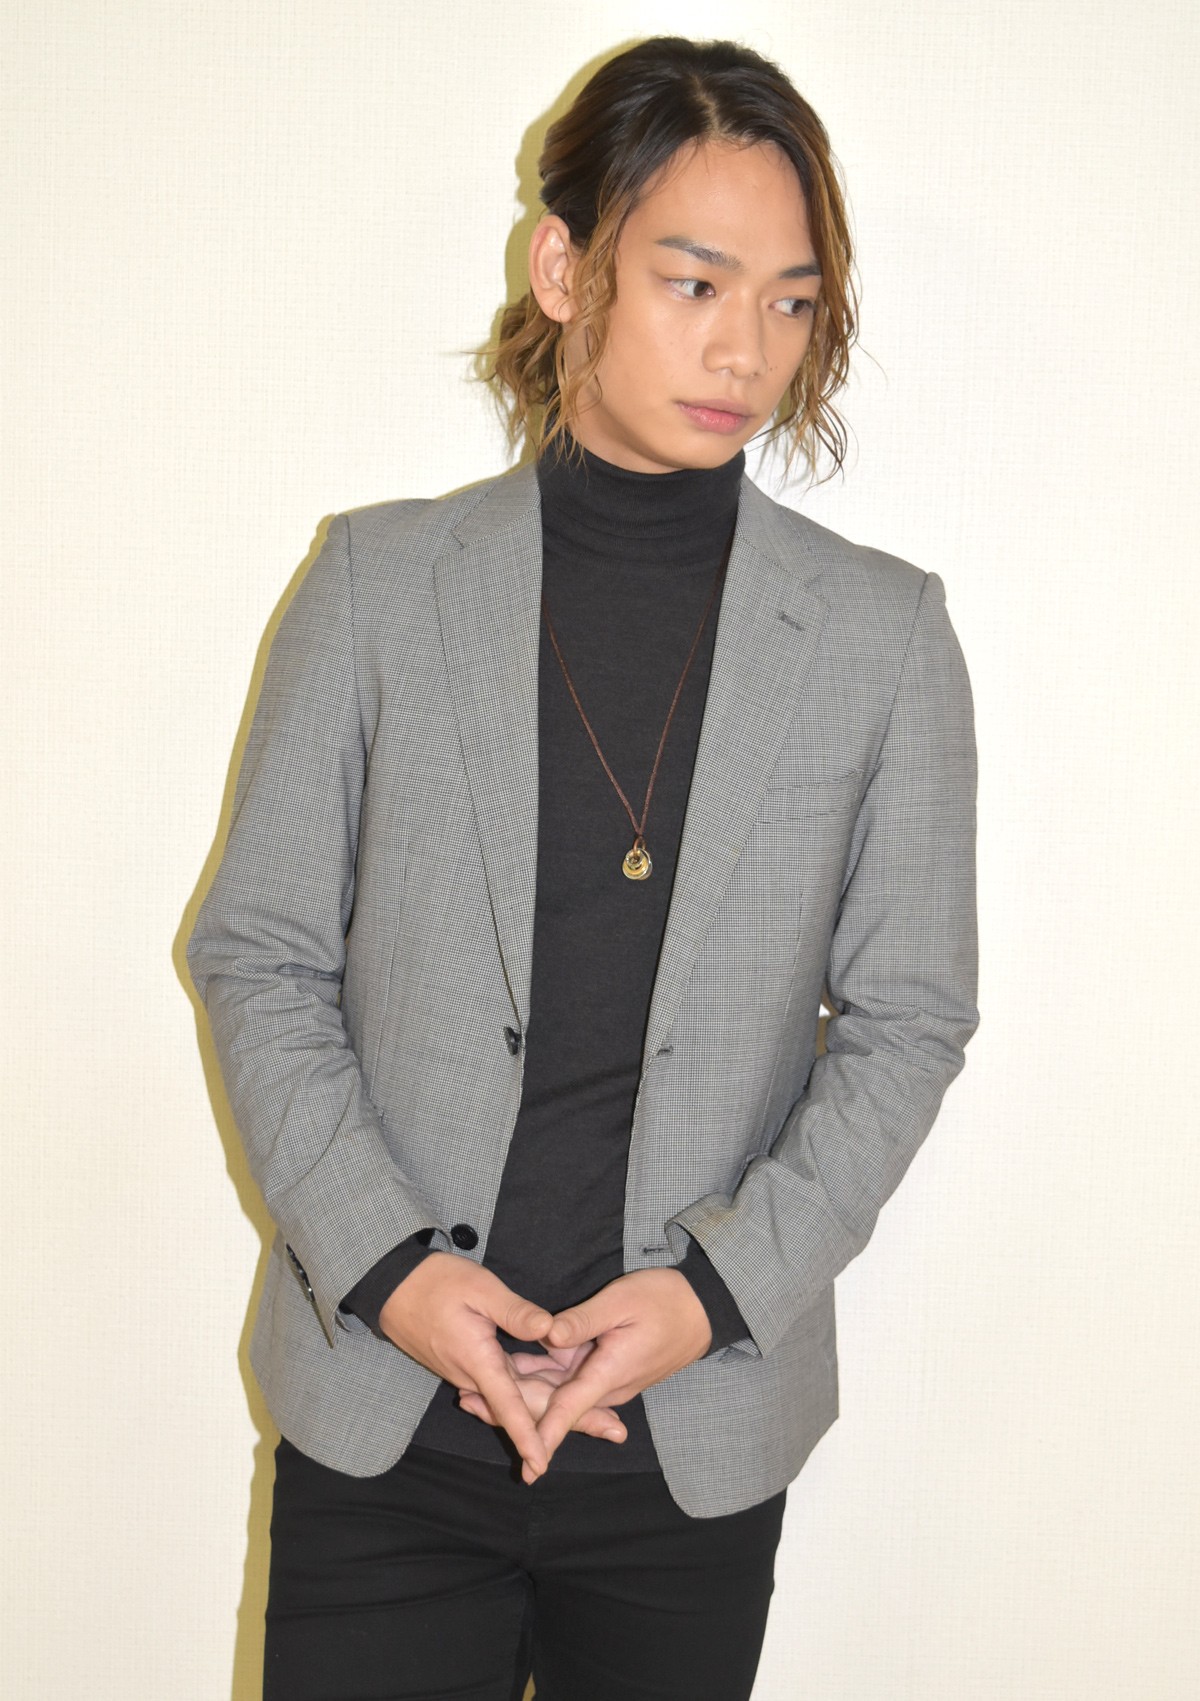 池田純矢、若きエンターテイナーが魅せる舞台 “演劇とは娯楽であるべき”理念に迫る